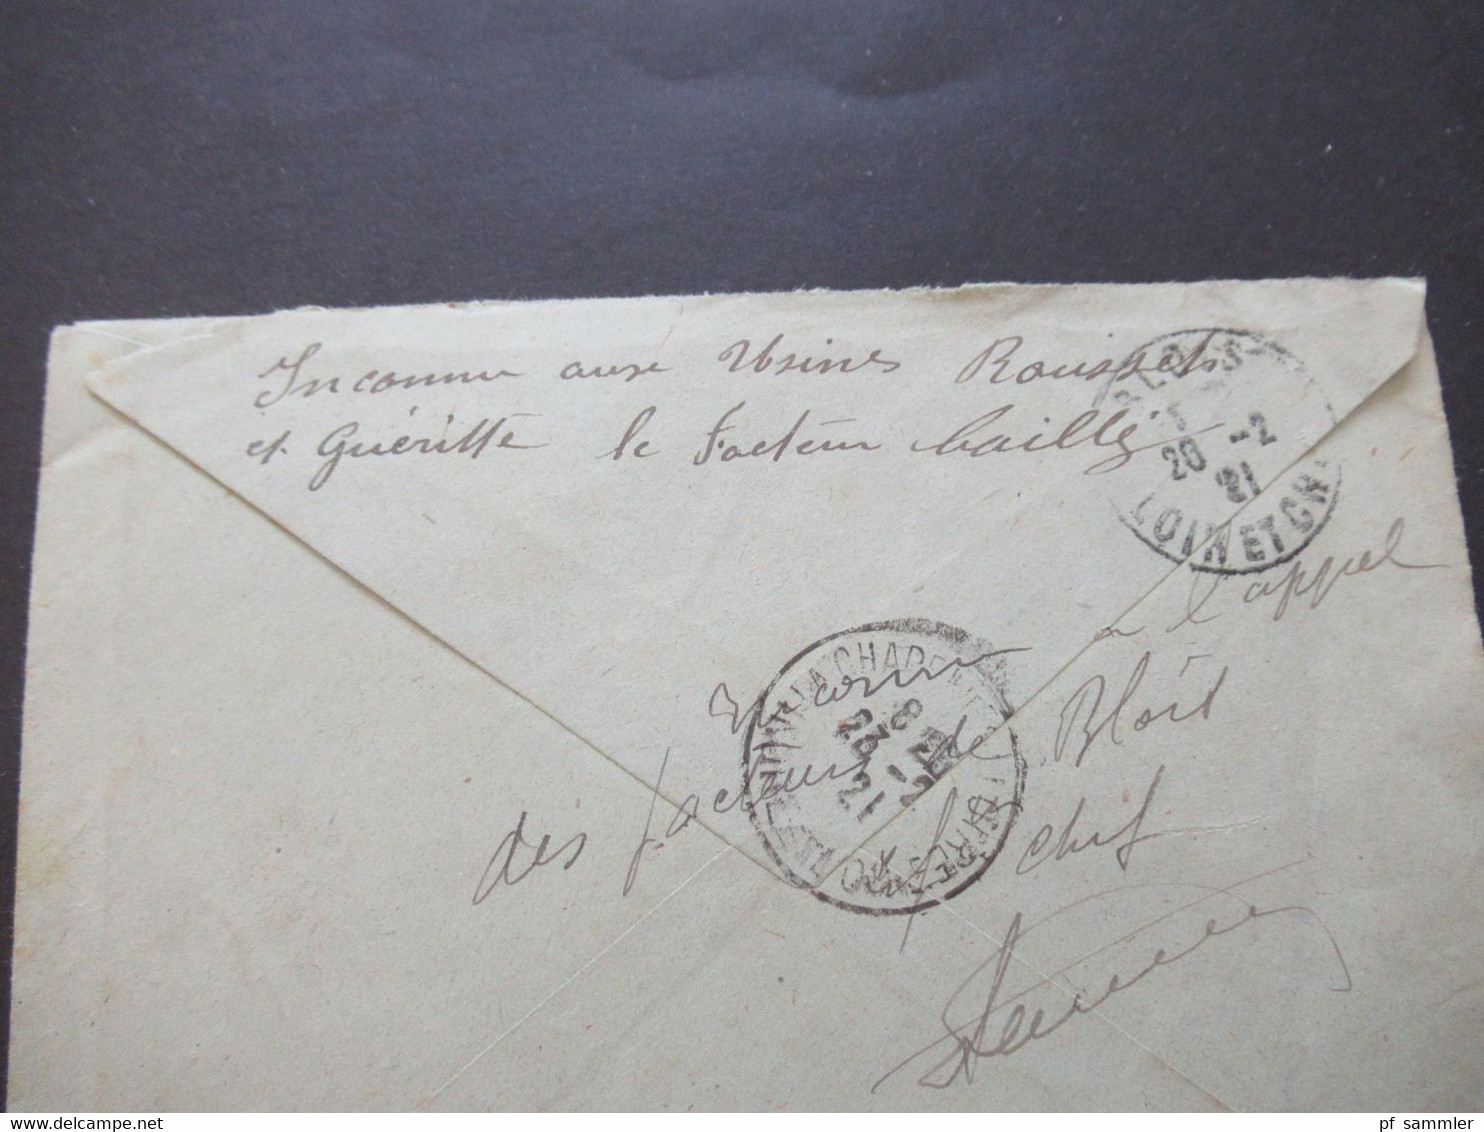 Frankreich 1921 Säerin EF Stempel L2 Retour A L'Envoyeur / Retour Brief mit Inhalt (Notaire) handschriftlicher Vermerk